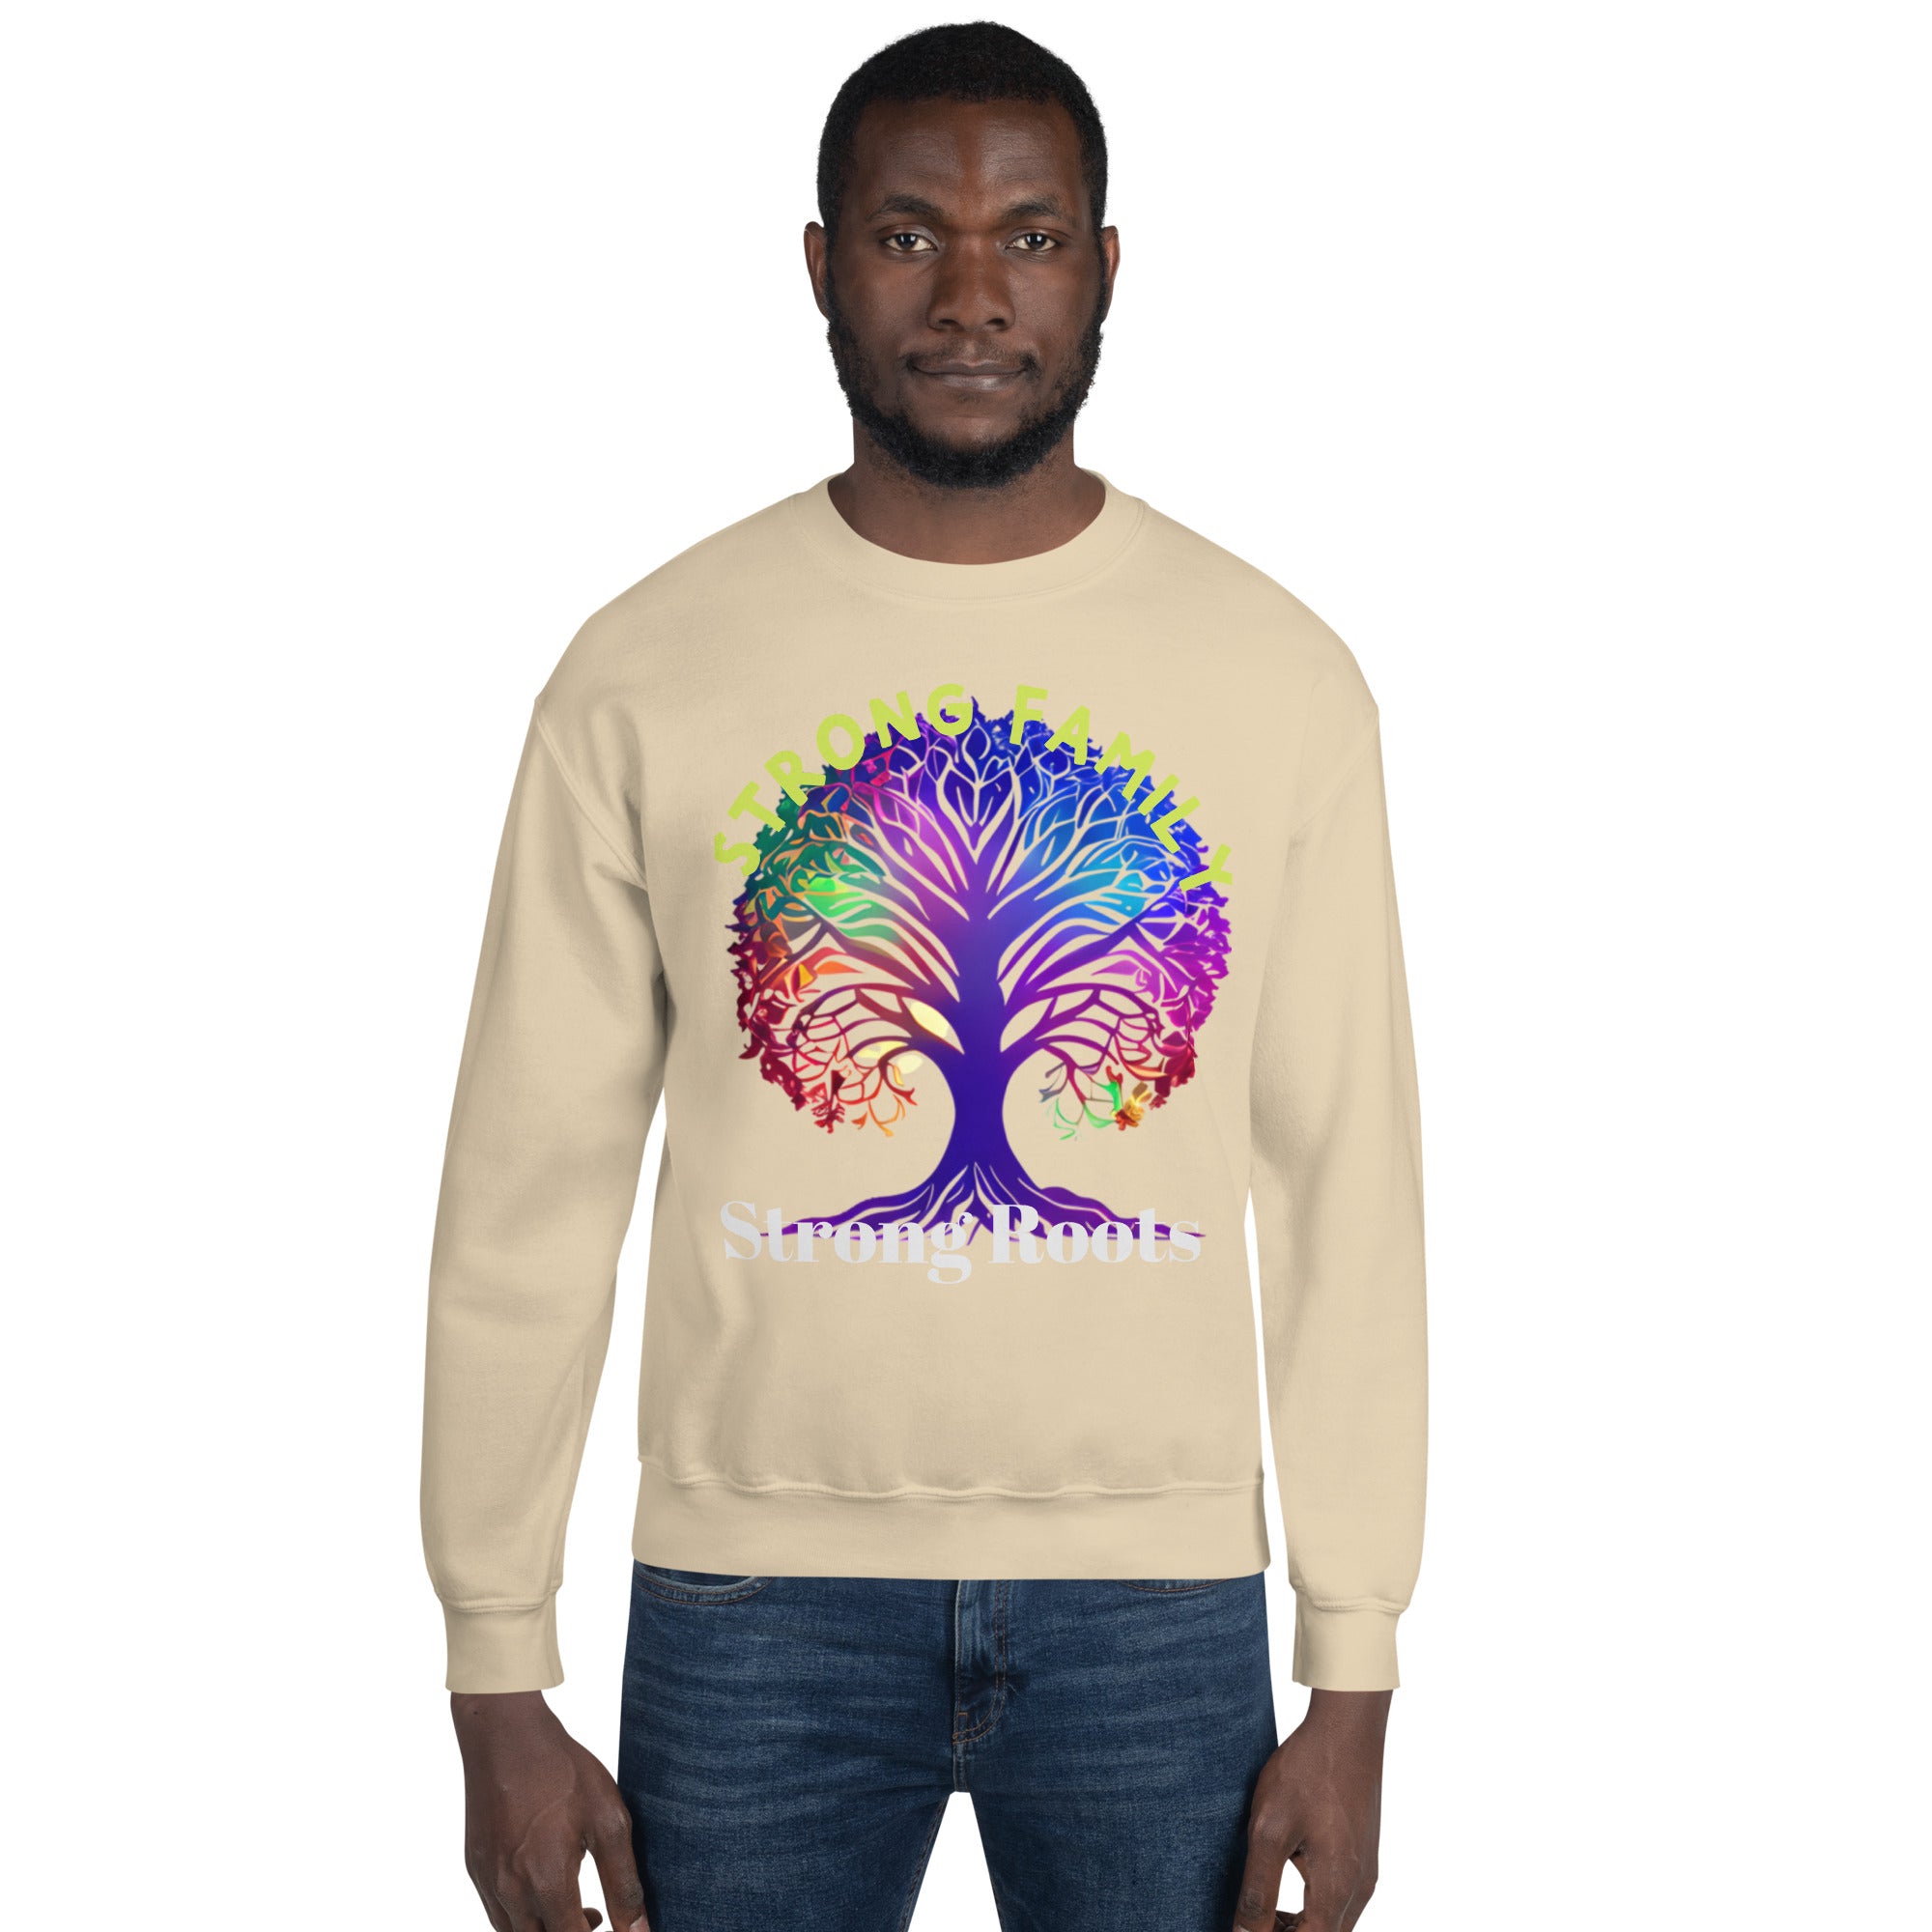 Unisex Sweatshirt, Gift, Back to School. Family Tree,